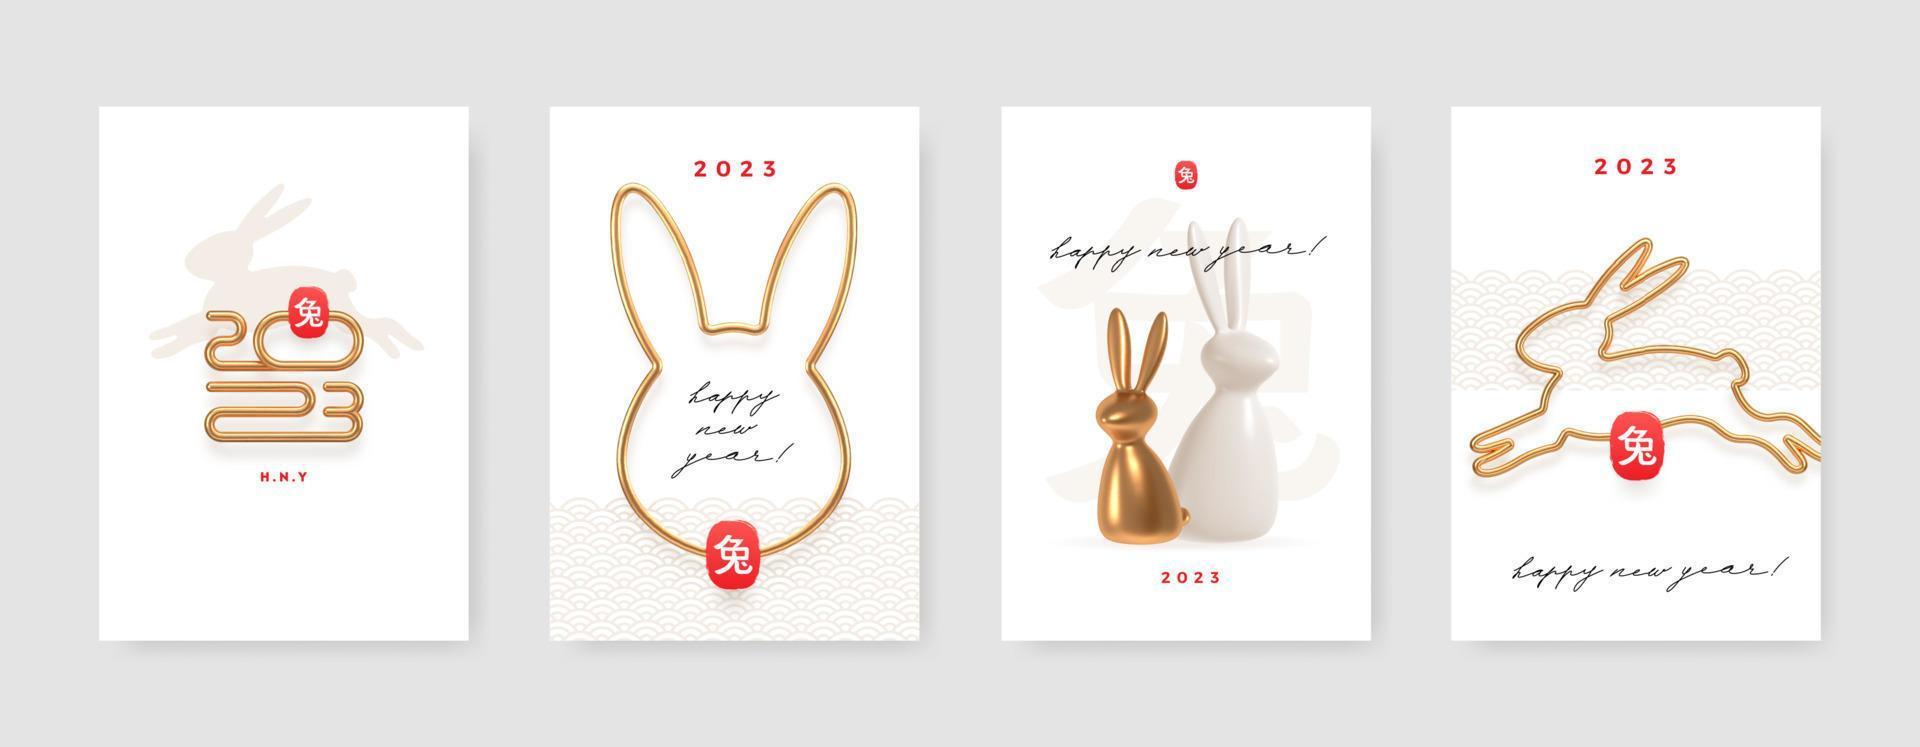 2023 ano do coelho. conjunto de cartão de ano novo chinês com coelho. cartaz de design minimalista com metal dourado realista. ilustração vetorial. tradução de caracteres chineses - coelho. vetor